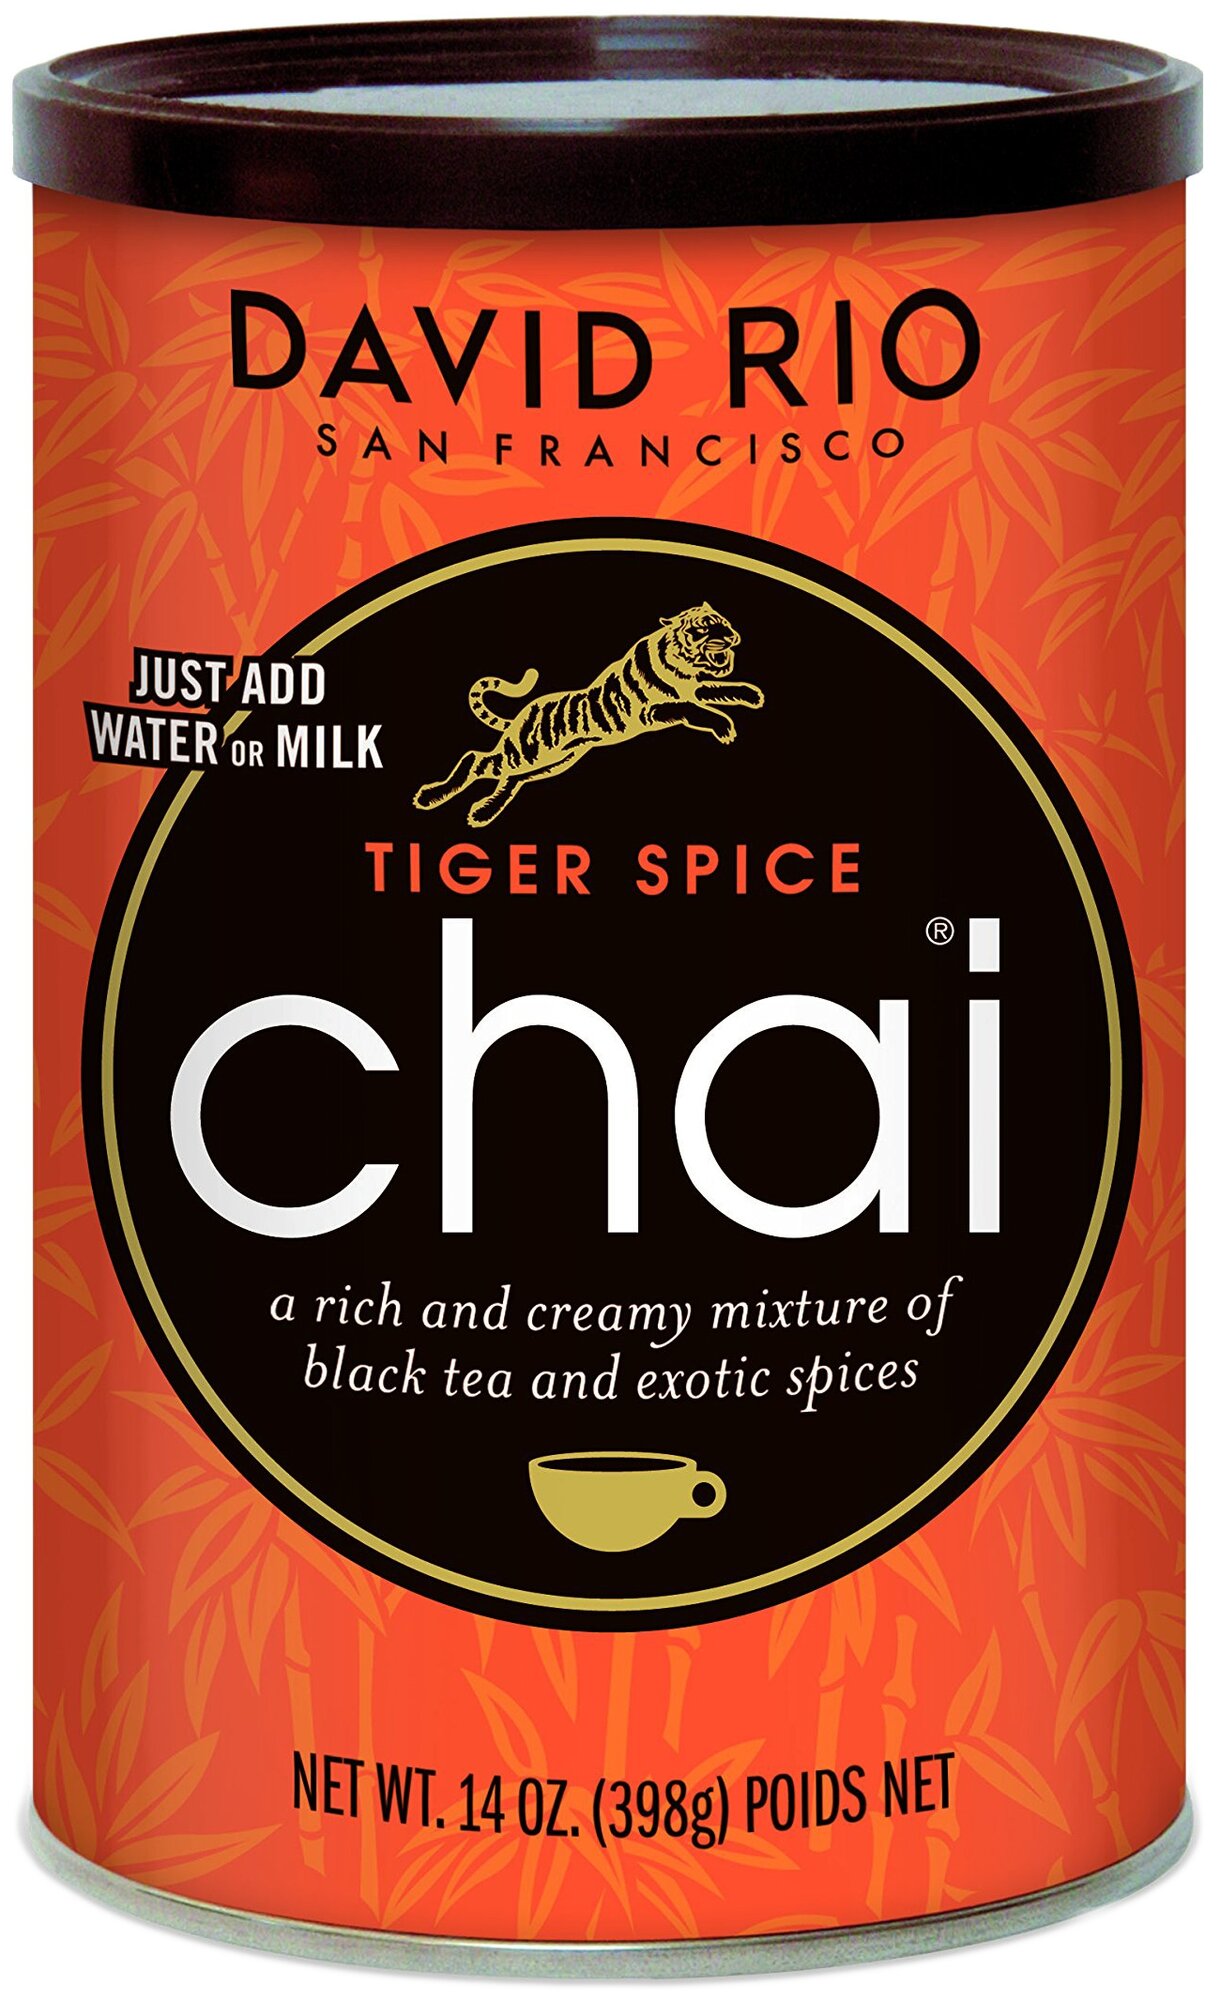 Пряный чай латте David Rio Chai Tiger Spice (с медом, кардамоном, корицей, имбирем), без глютена и лактозы, 398г. - фотография № 1